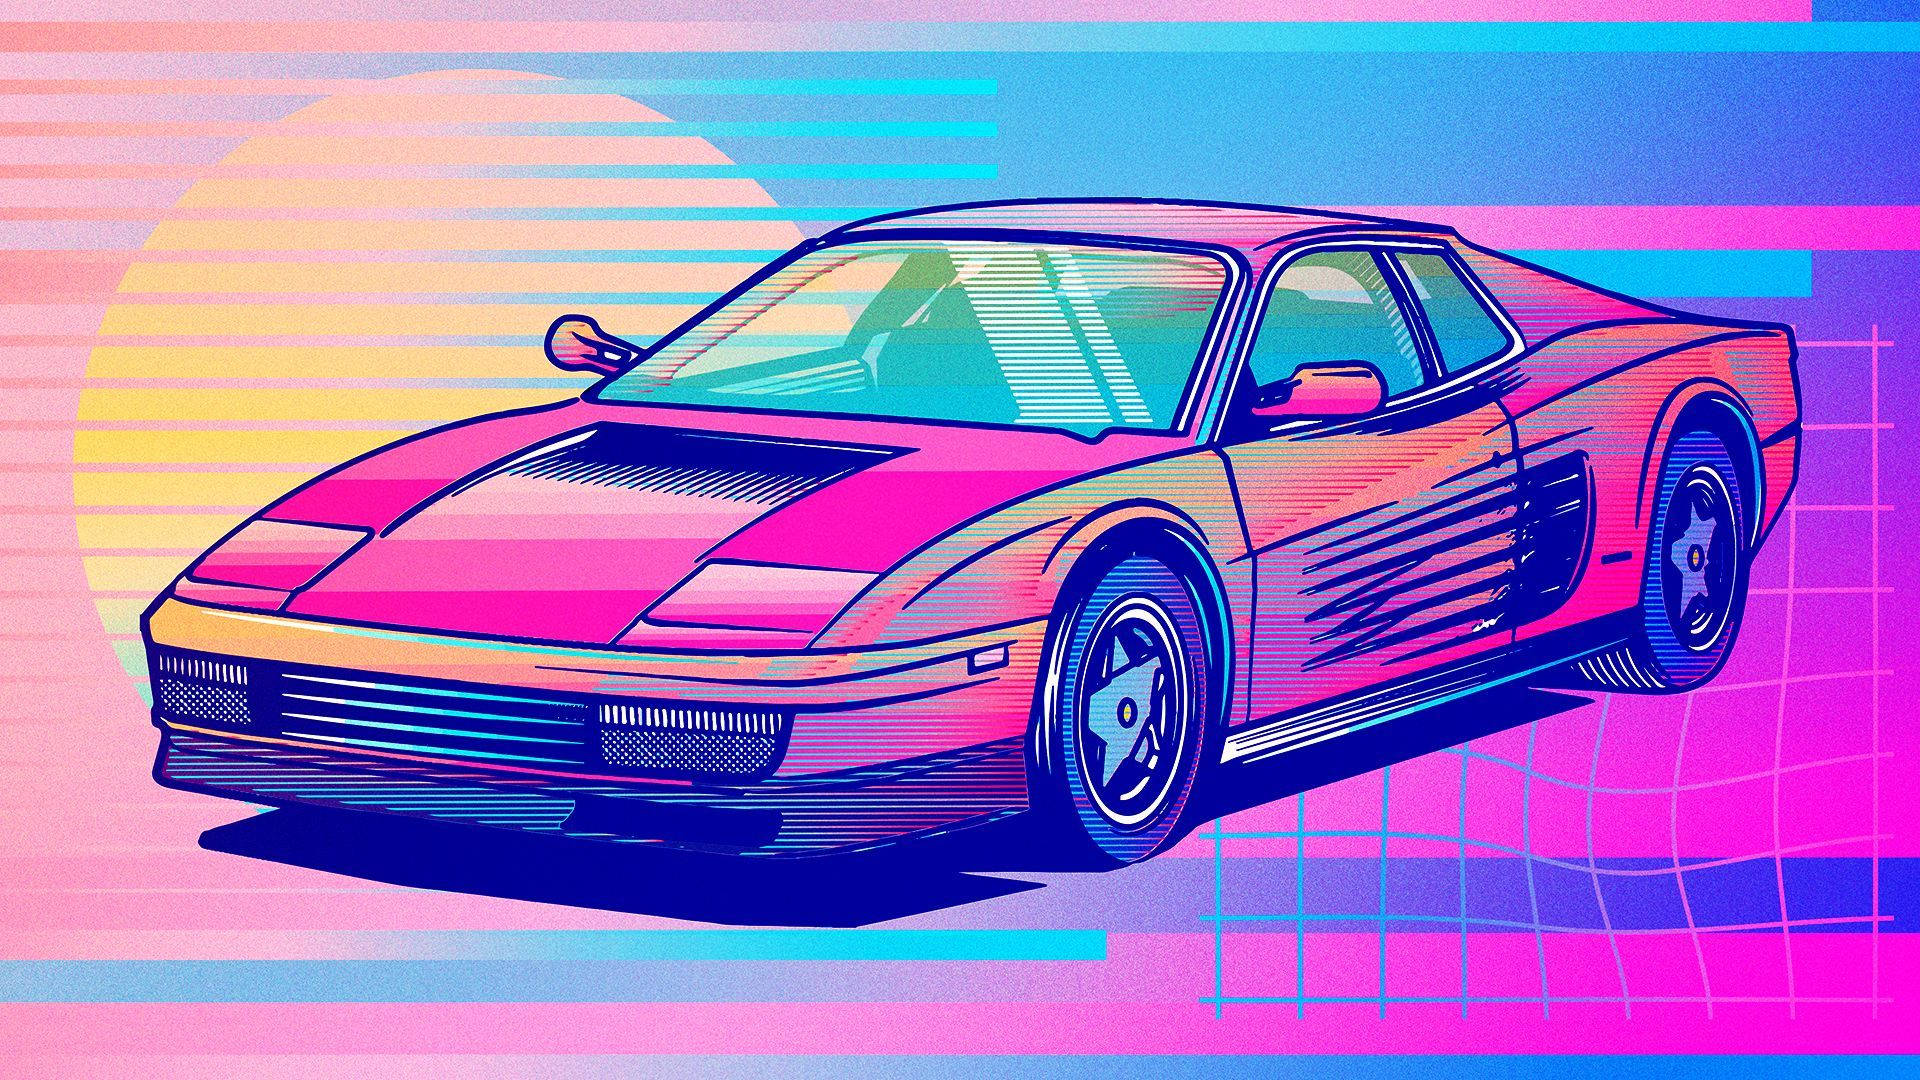 Tải hình nền xe hơi màu hồng cho máy tính của bạn để trở nên dễ thương hơn. Một hình nền đẹp và lạ mắt sẽ khiến cho máy tính của bạn trở nên nổi bật hơn. Hãy tải ngay hình nền xe hơi màu hồng miễn phí để khiến cho người khác cứ phải nhìn lại.